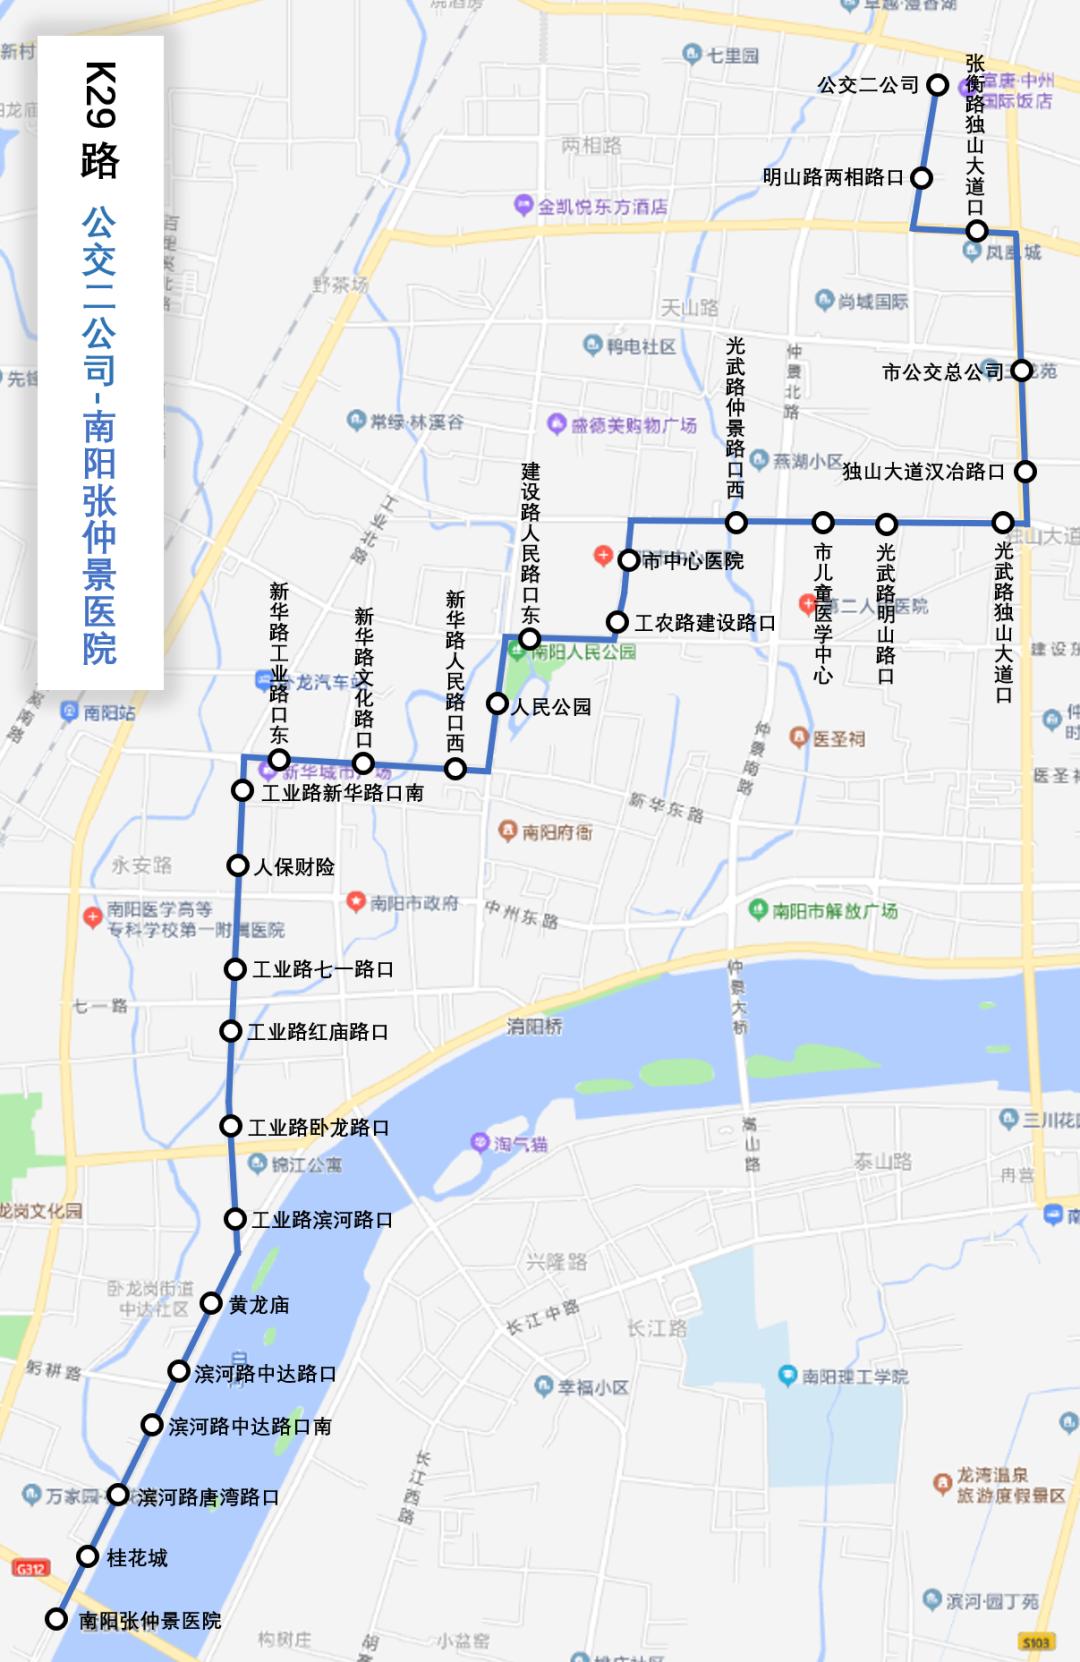 南阳41路公交车路线图图片